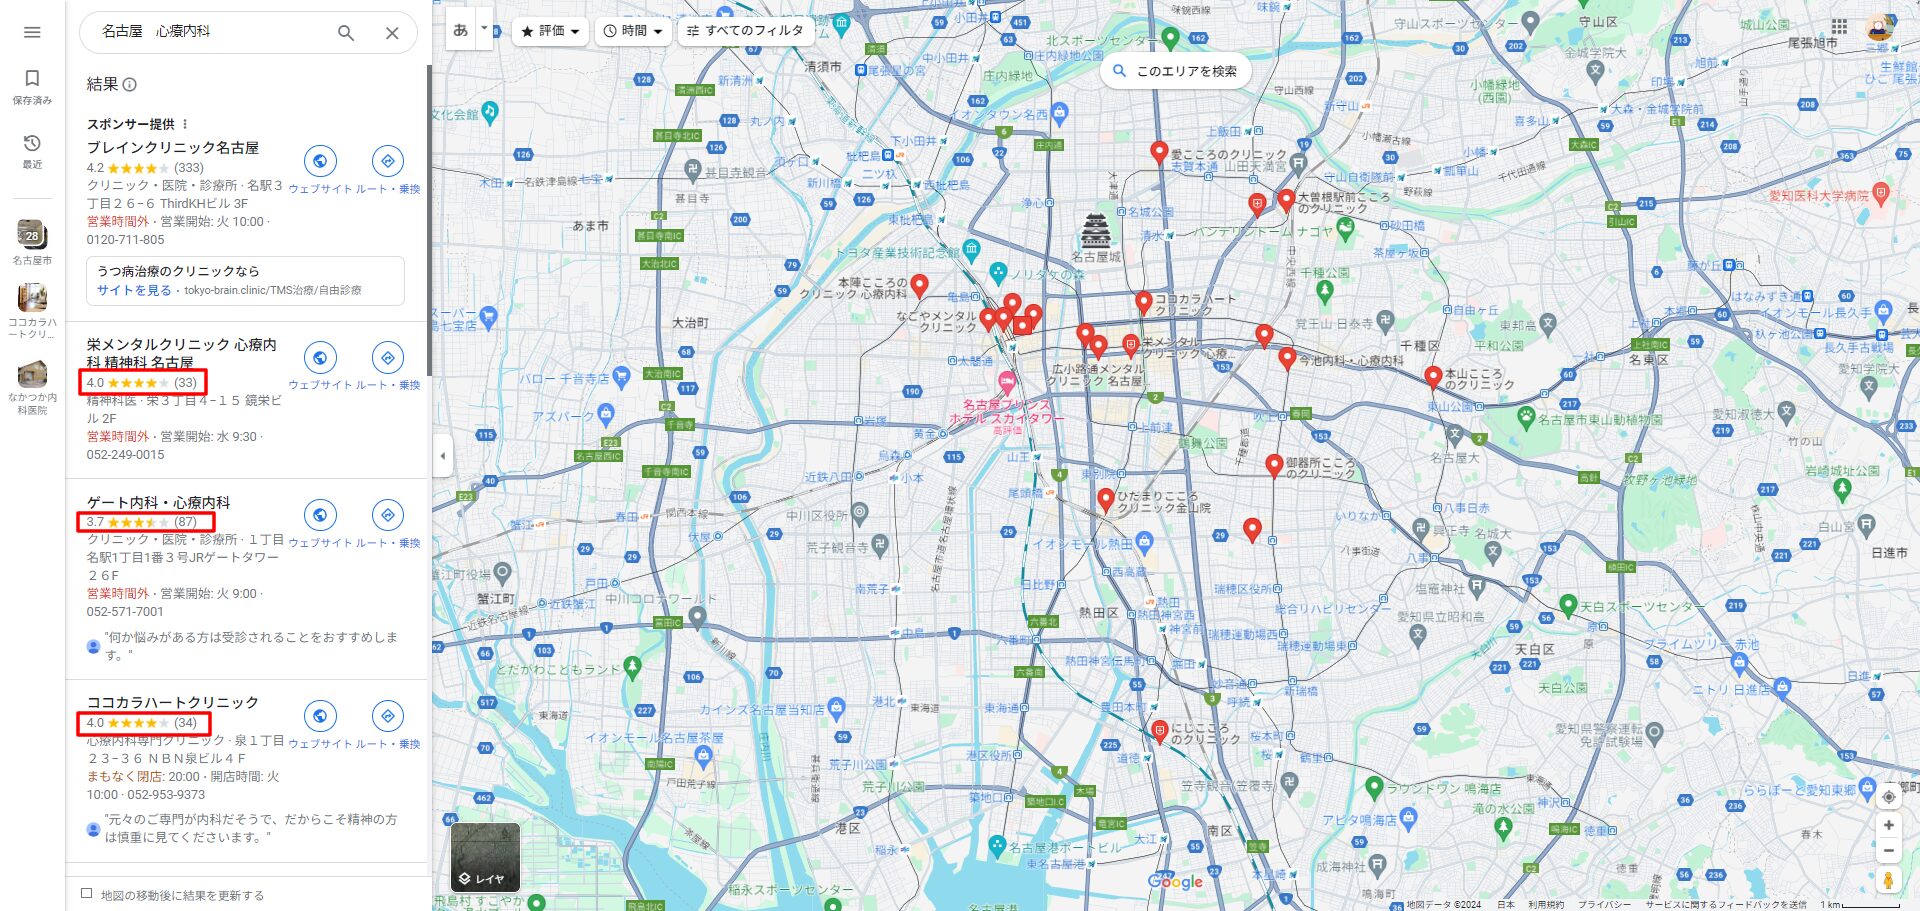 名古屋精神科Googleマップ